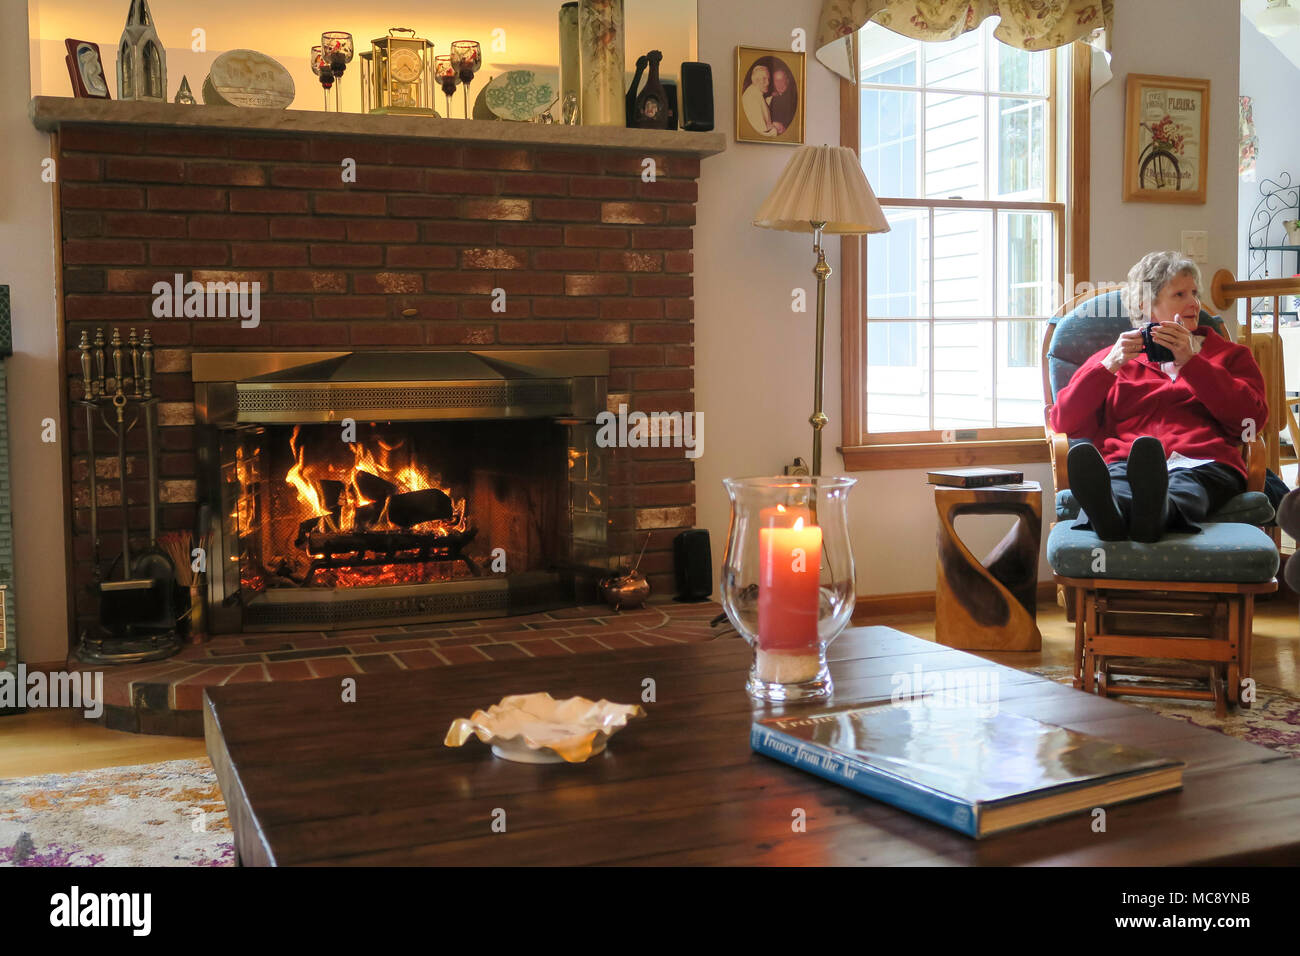 Einladende Familienzimmer mit Feuer im Kamin, USA Stockfotografie - Alamy